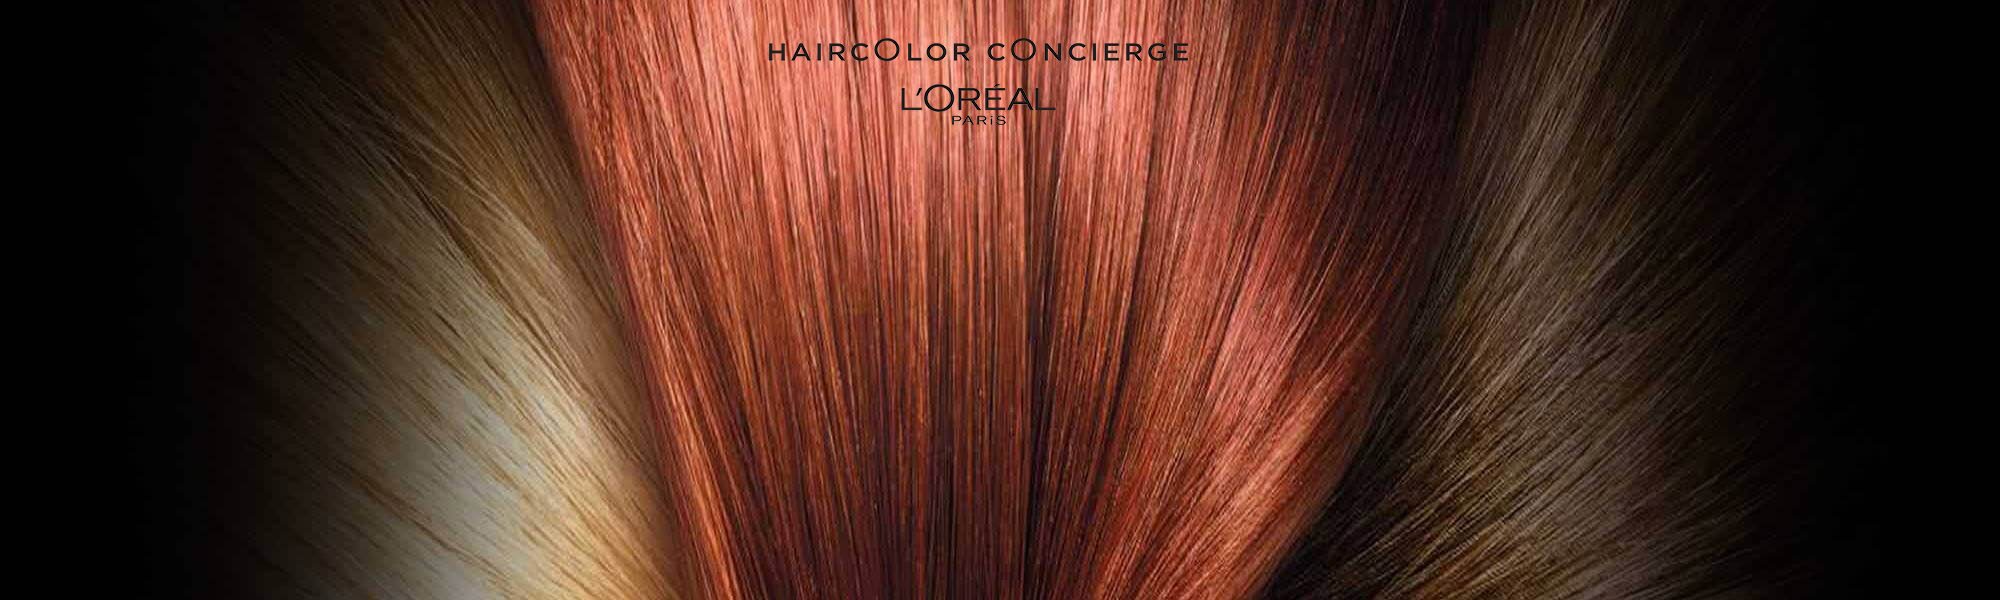 At-Home Hair Color Concierge: Hair Ideas & How To's - L'Oréal Paris